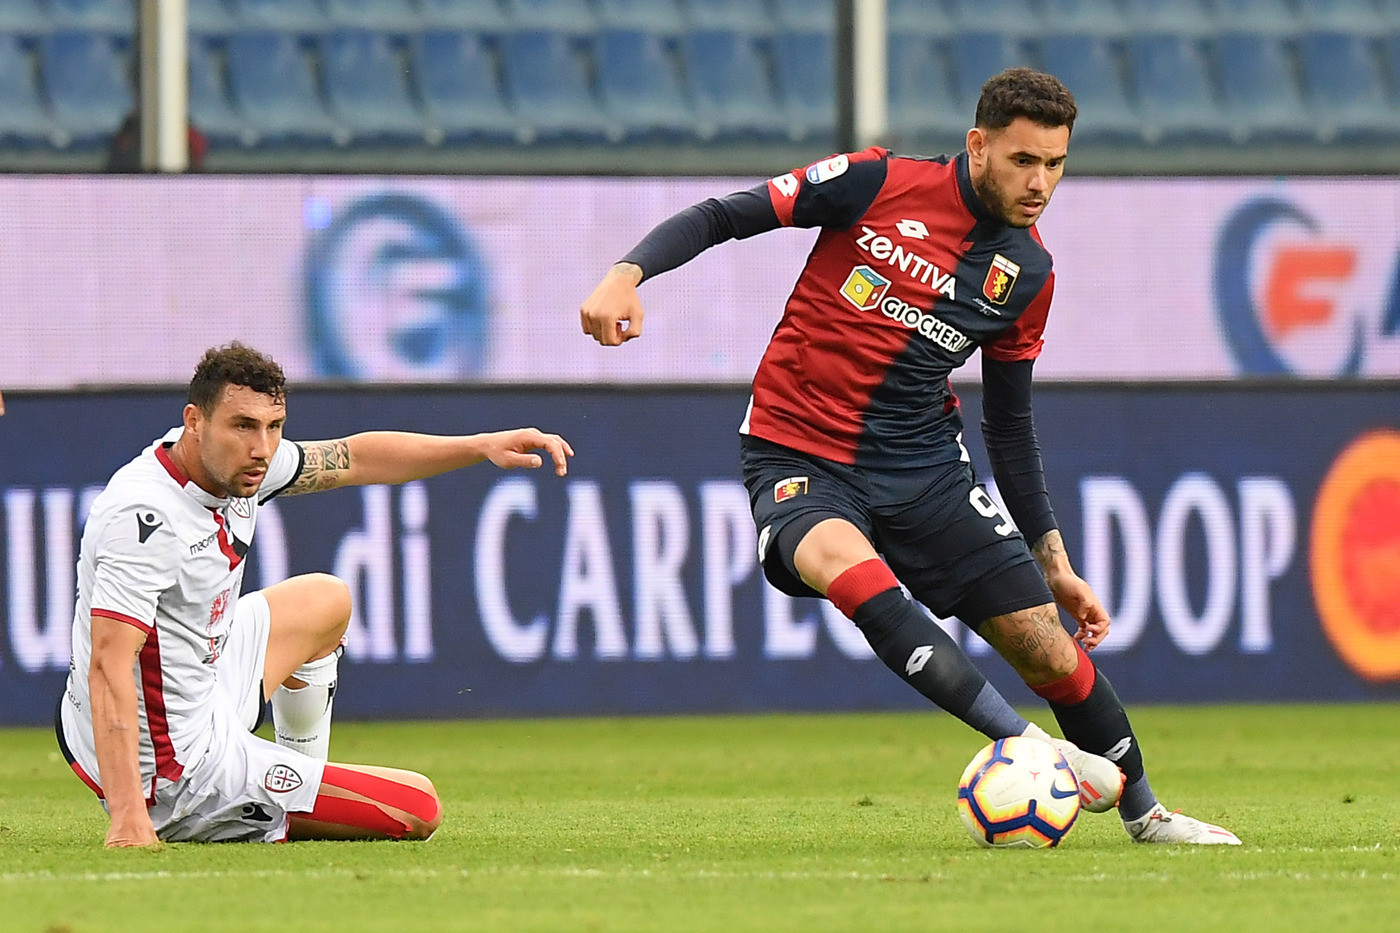 Serie A, Genoa-Cagliari 1-1 | Il fotoracconto